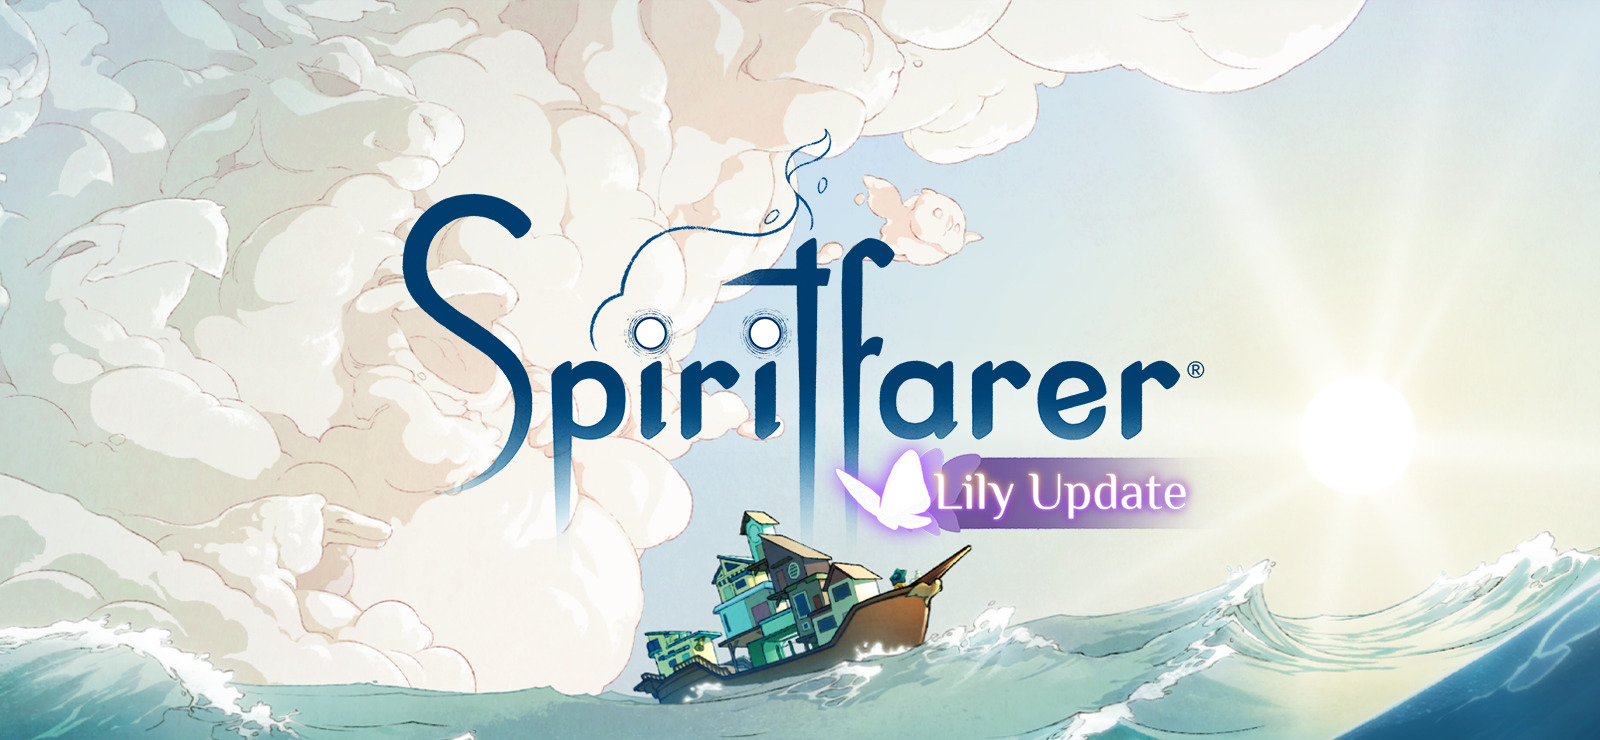 spiritfarer lily update